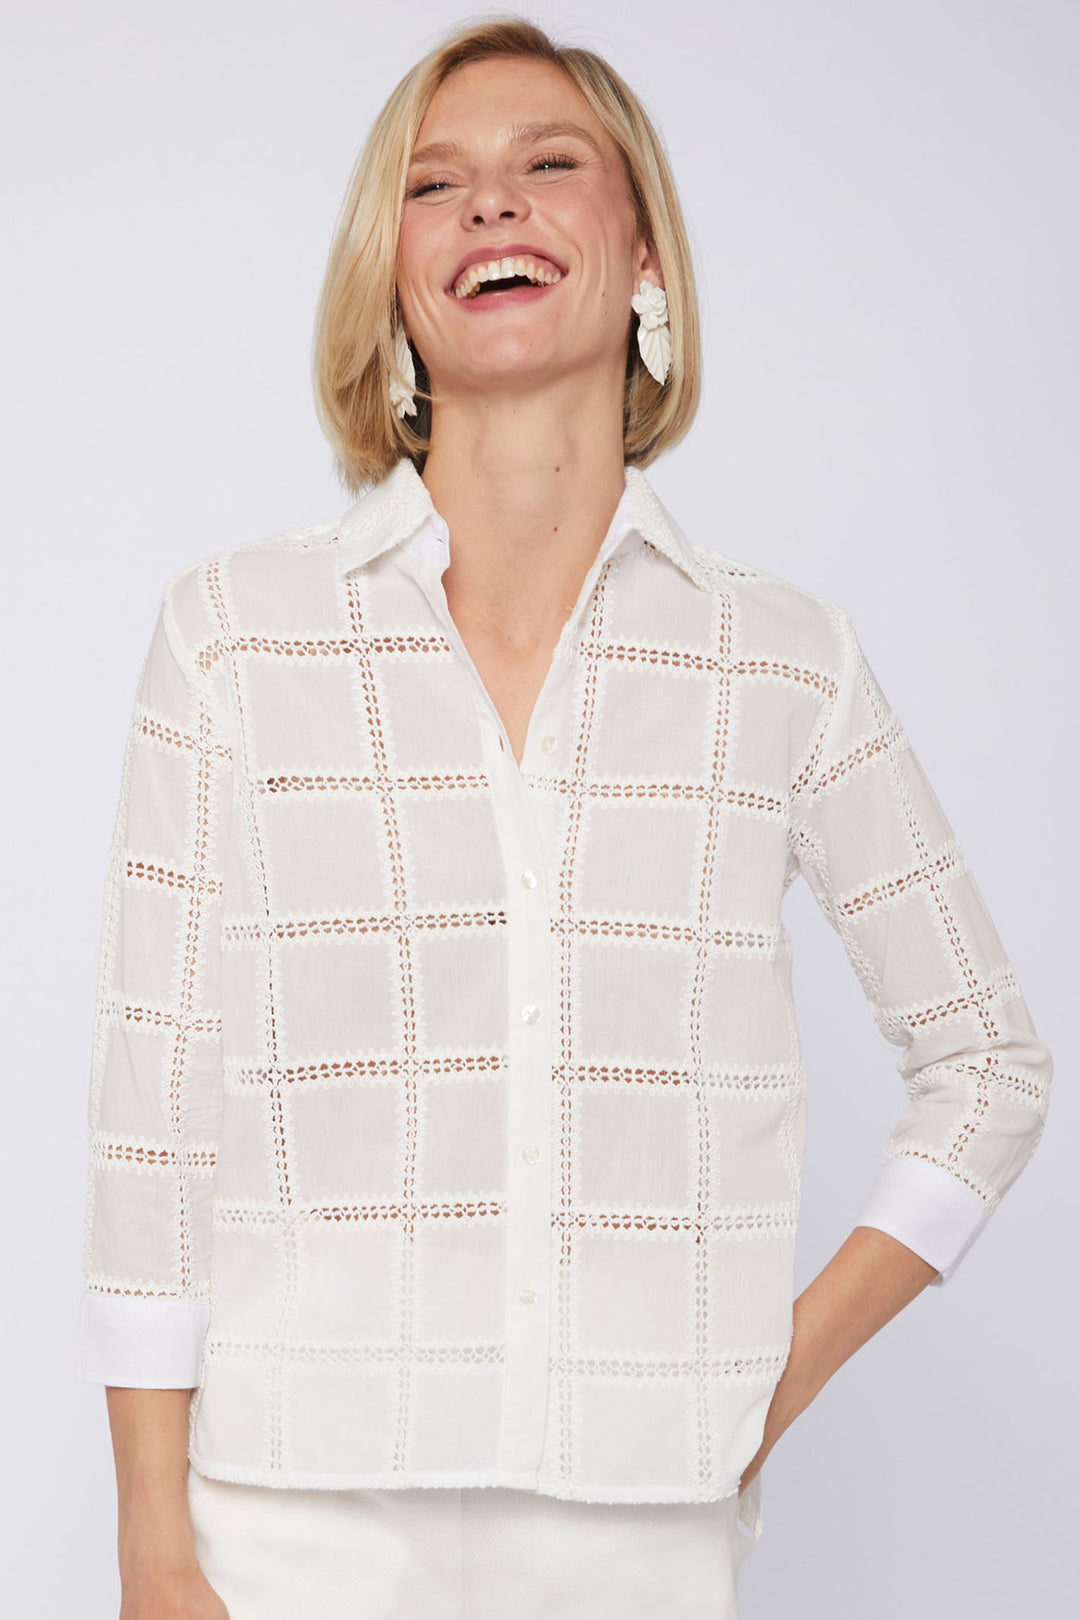 Vilagallo 31279 White Embroidered Square Shirt - Olivia Grace Fashion